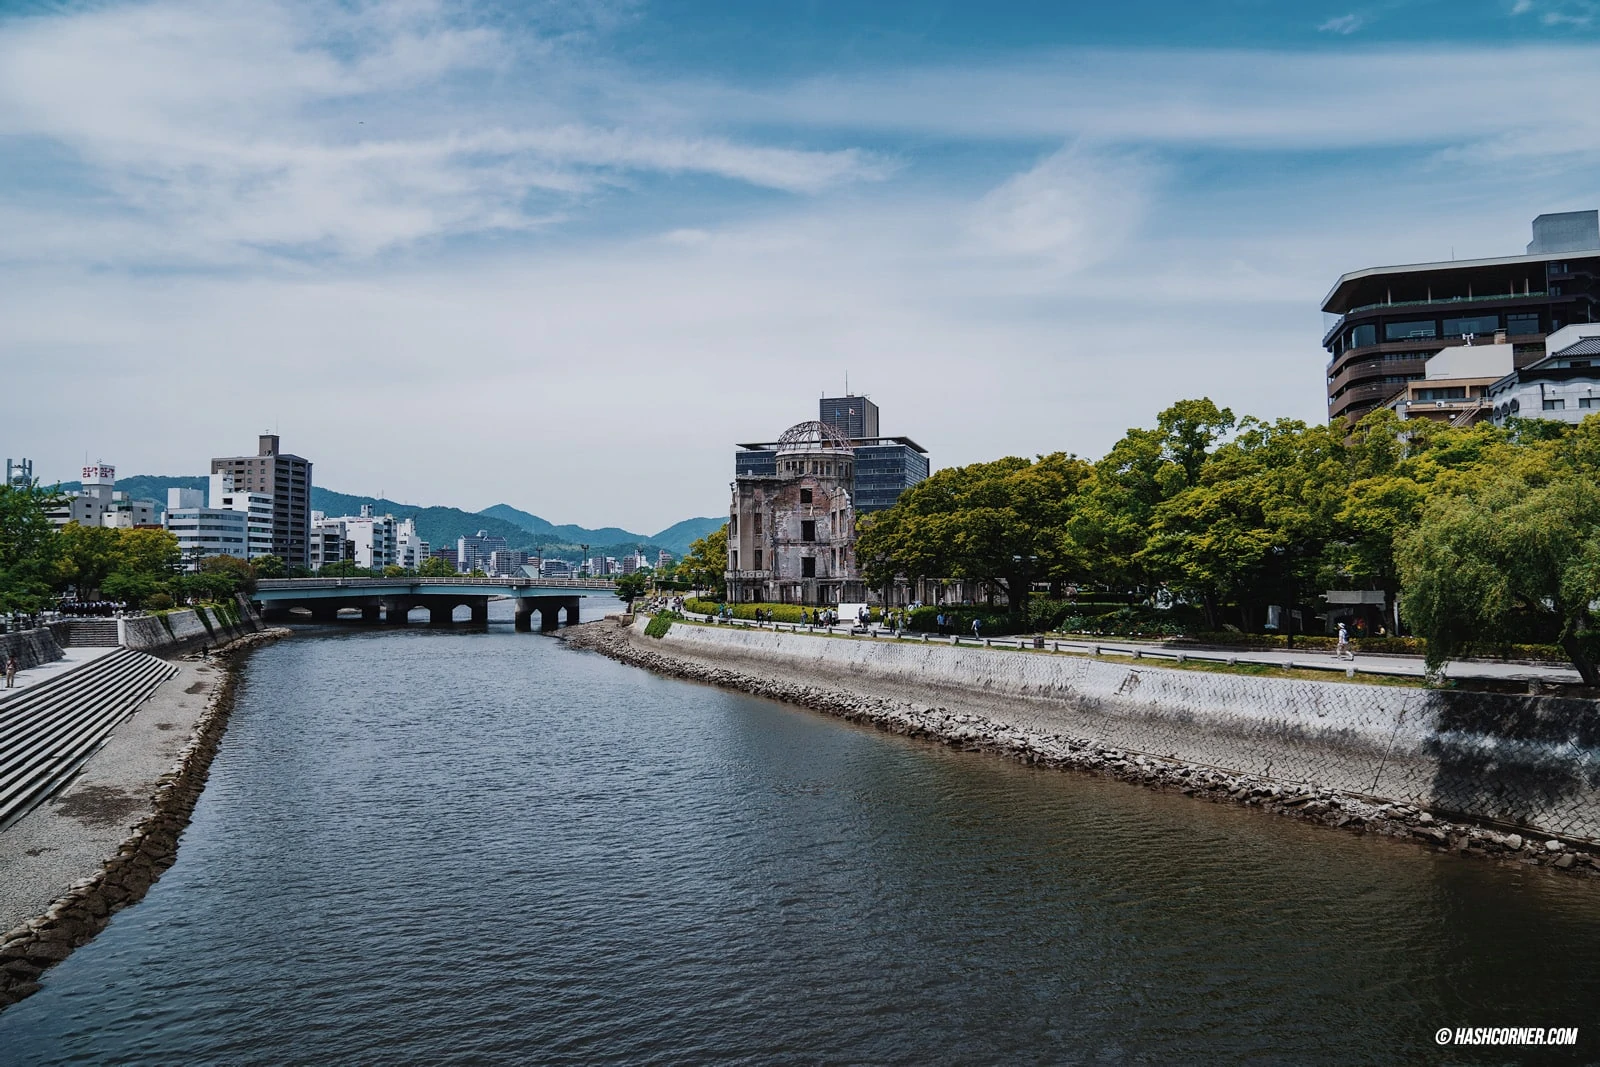 รีวิว ฮิโรชิม่า (Hiroshima) เที่ยวญี่ปุ่น เมืองสันติภาพ